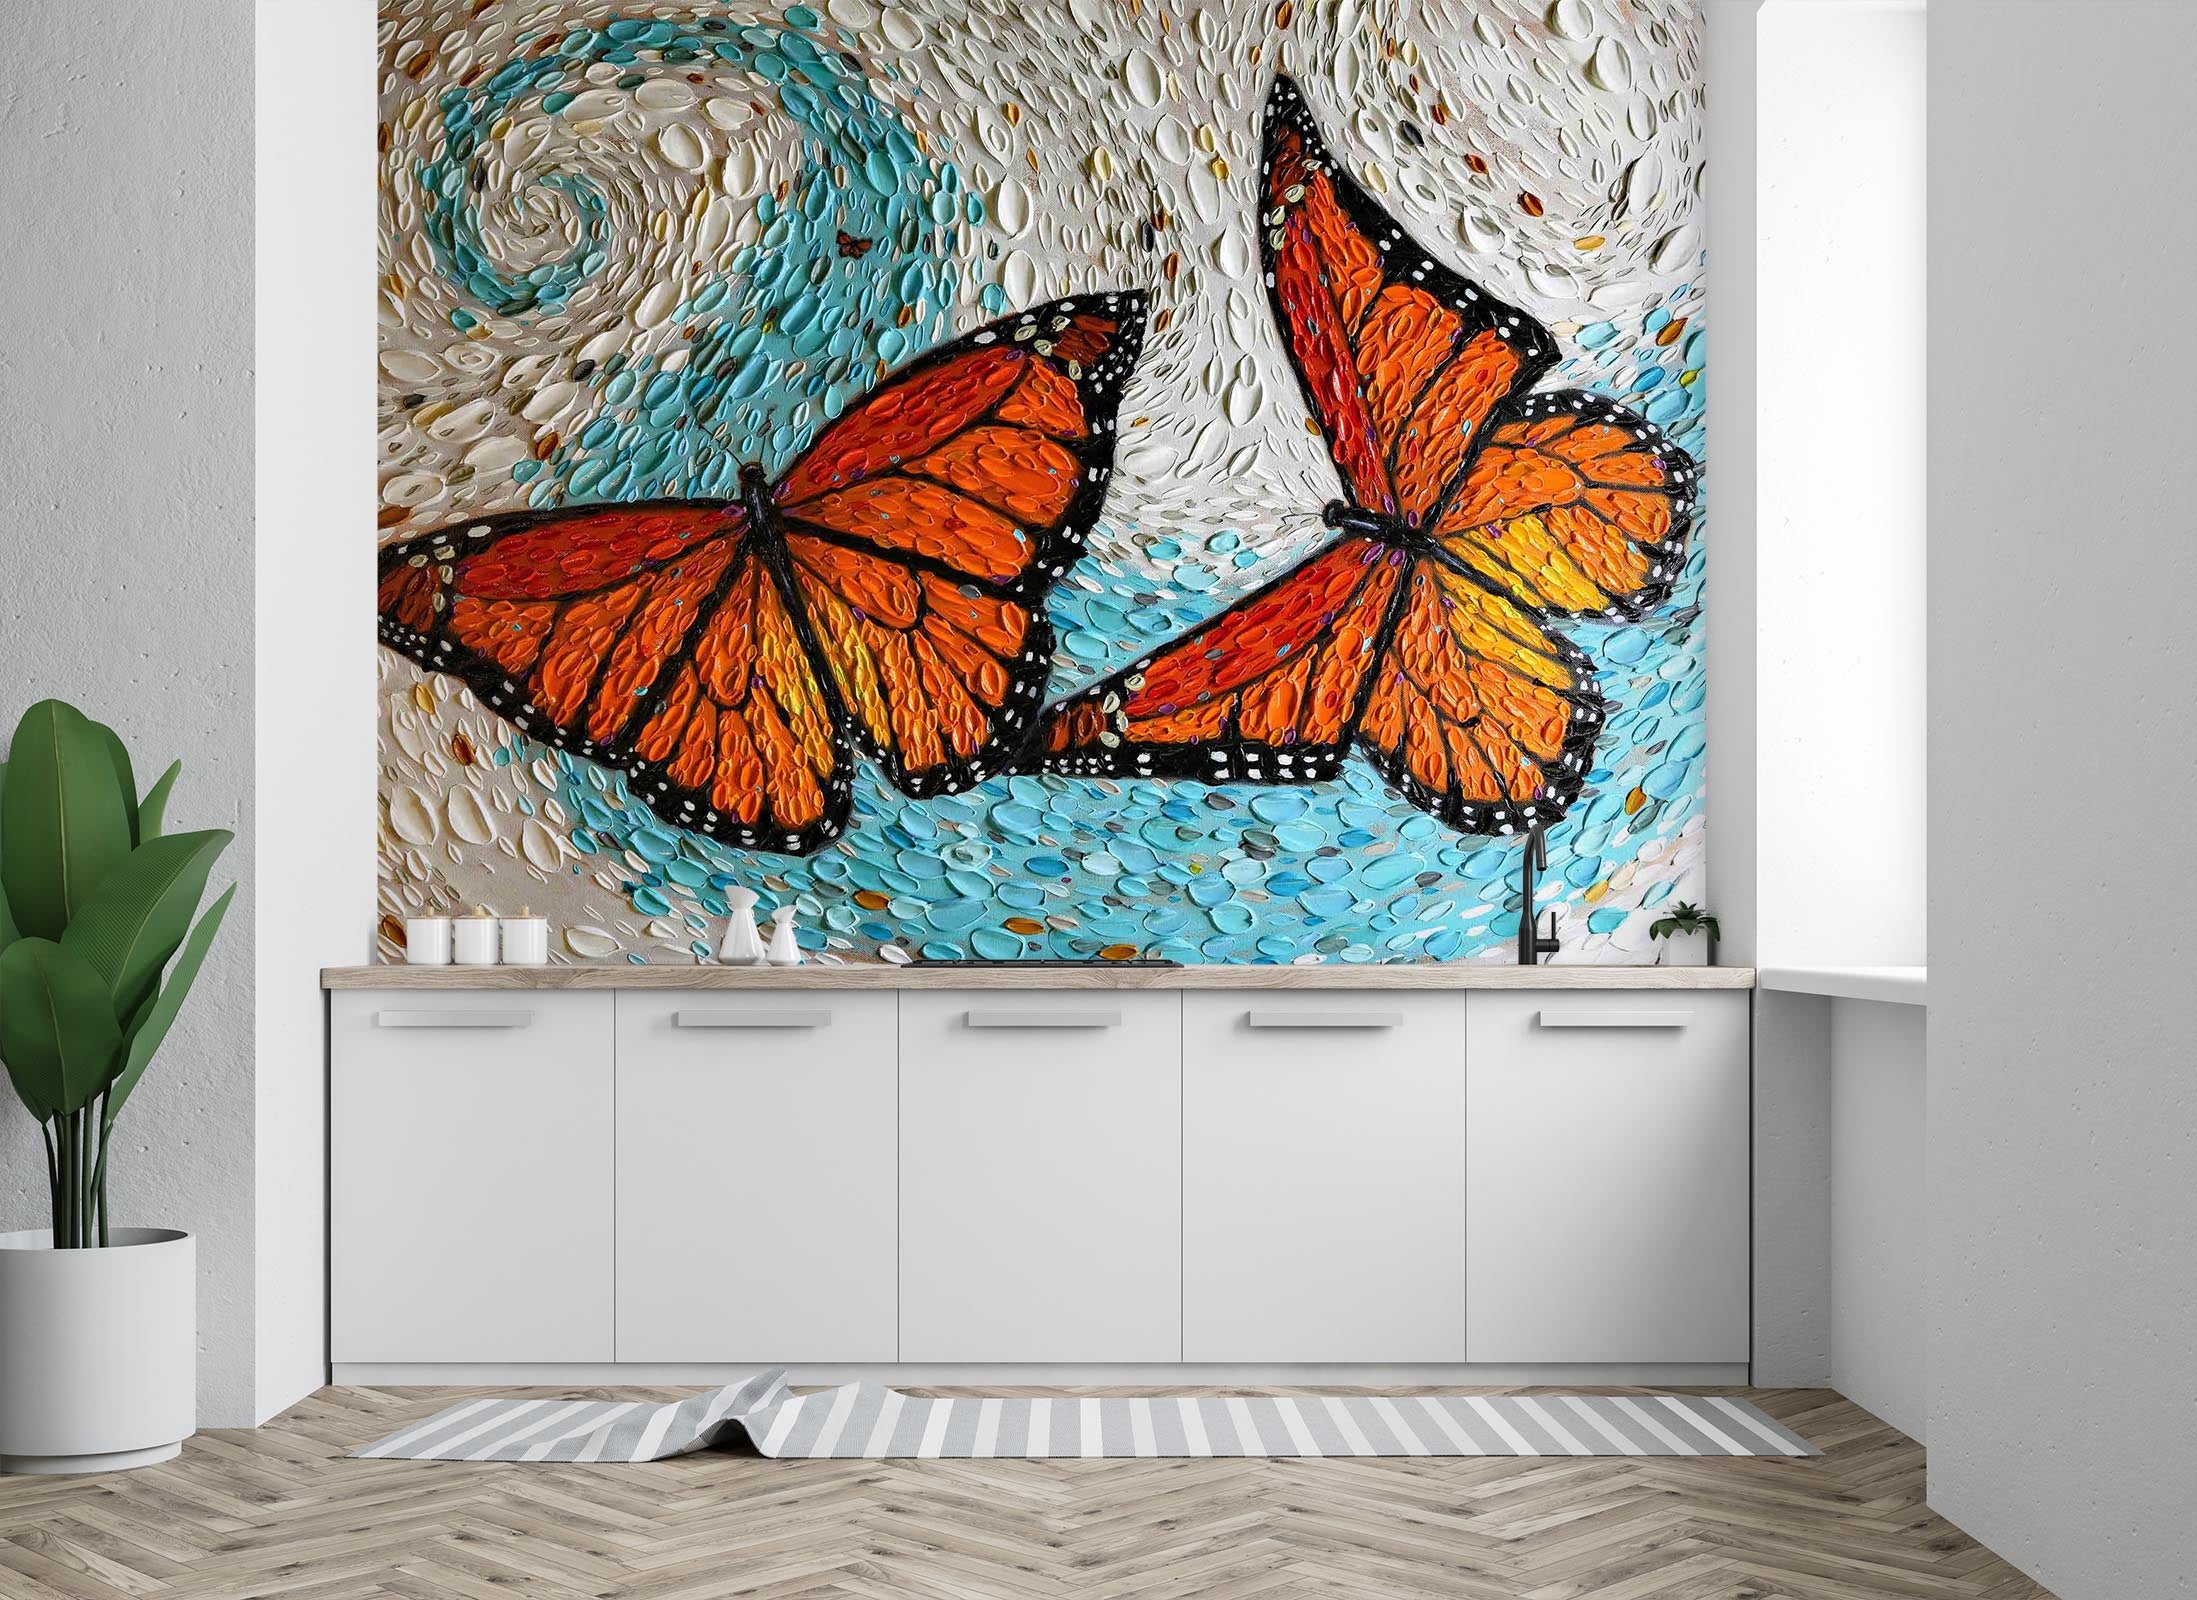 3D Butterfly Shell 1421 Dena Tollefson Wall Mural Wall Murals